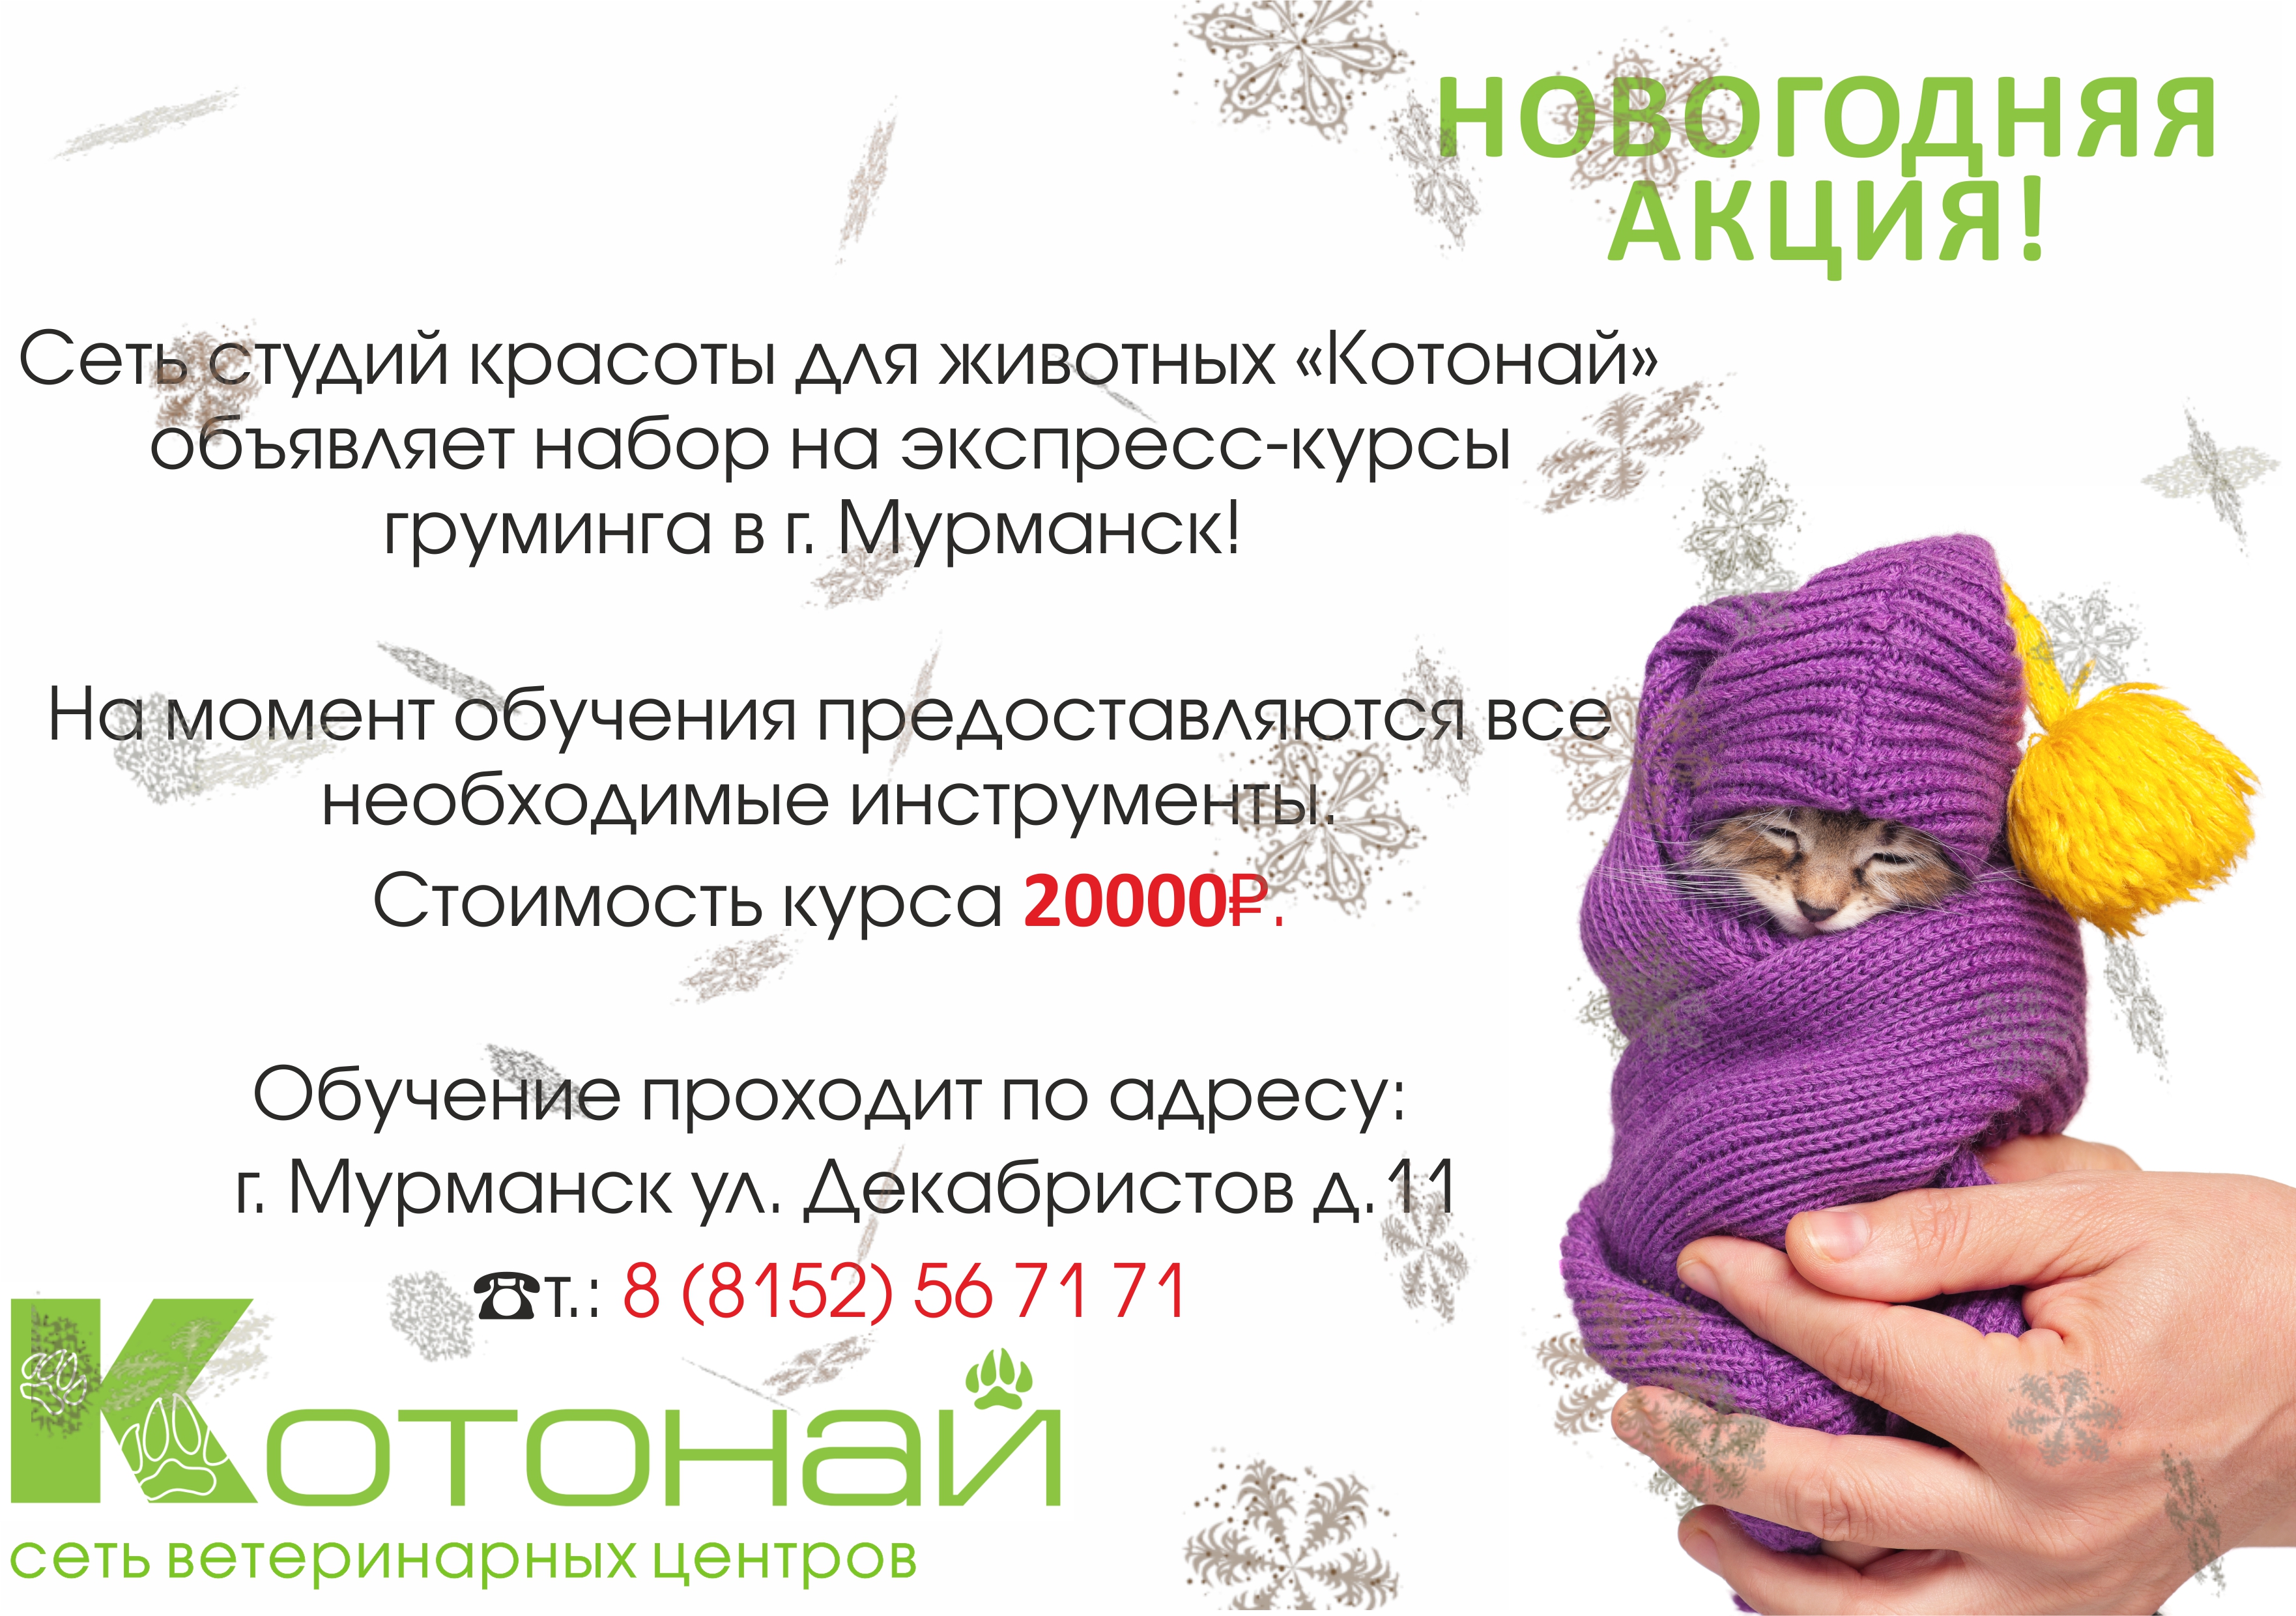 НОВОГОДНЯЯ АКЦИЯ! Курсы груминга в городе Мурманск всего за 20 000 рублей